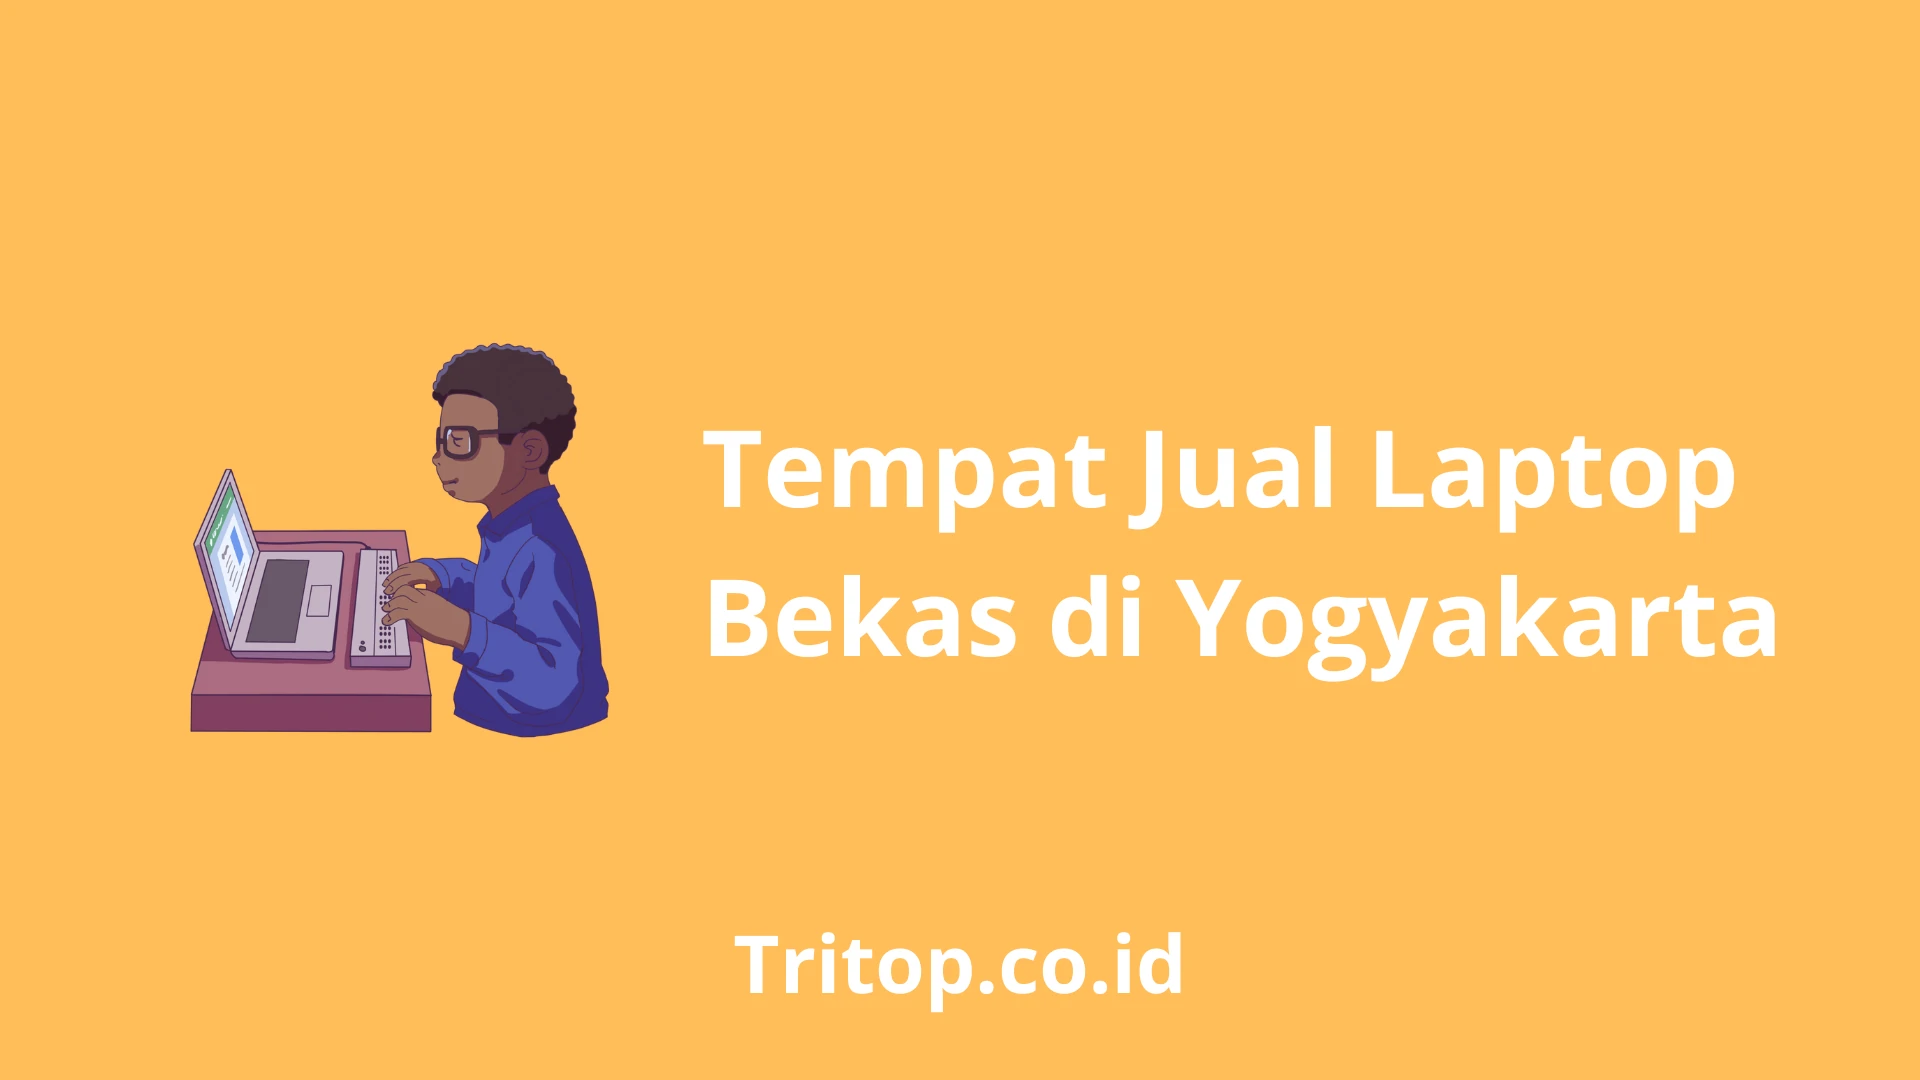 Tempat Jual Laptop Bekas di Jogja Yogyakarta City Special Region of Yogyakarta tritop.co.id